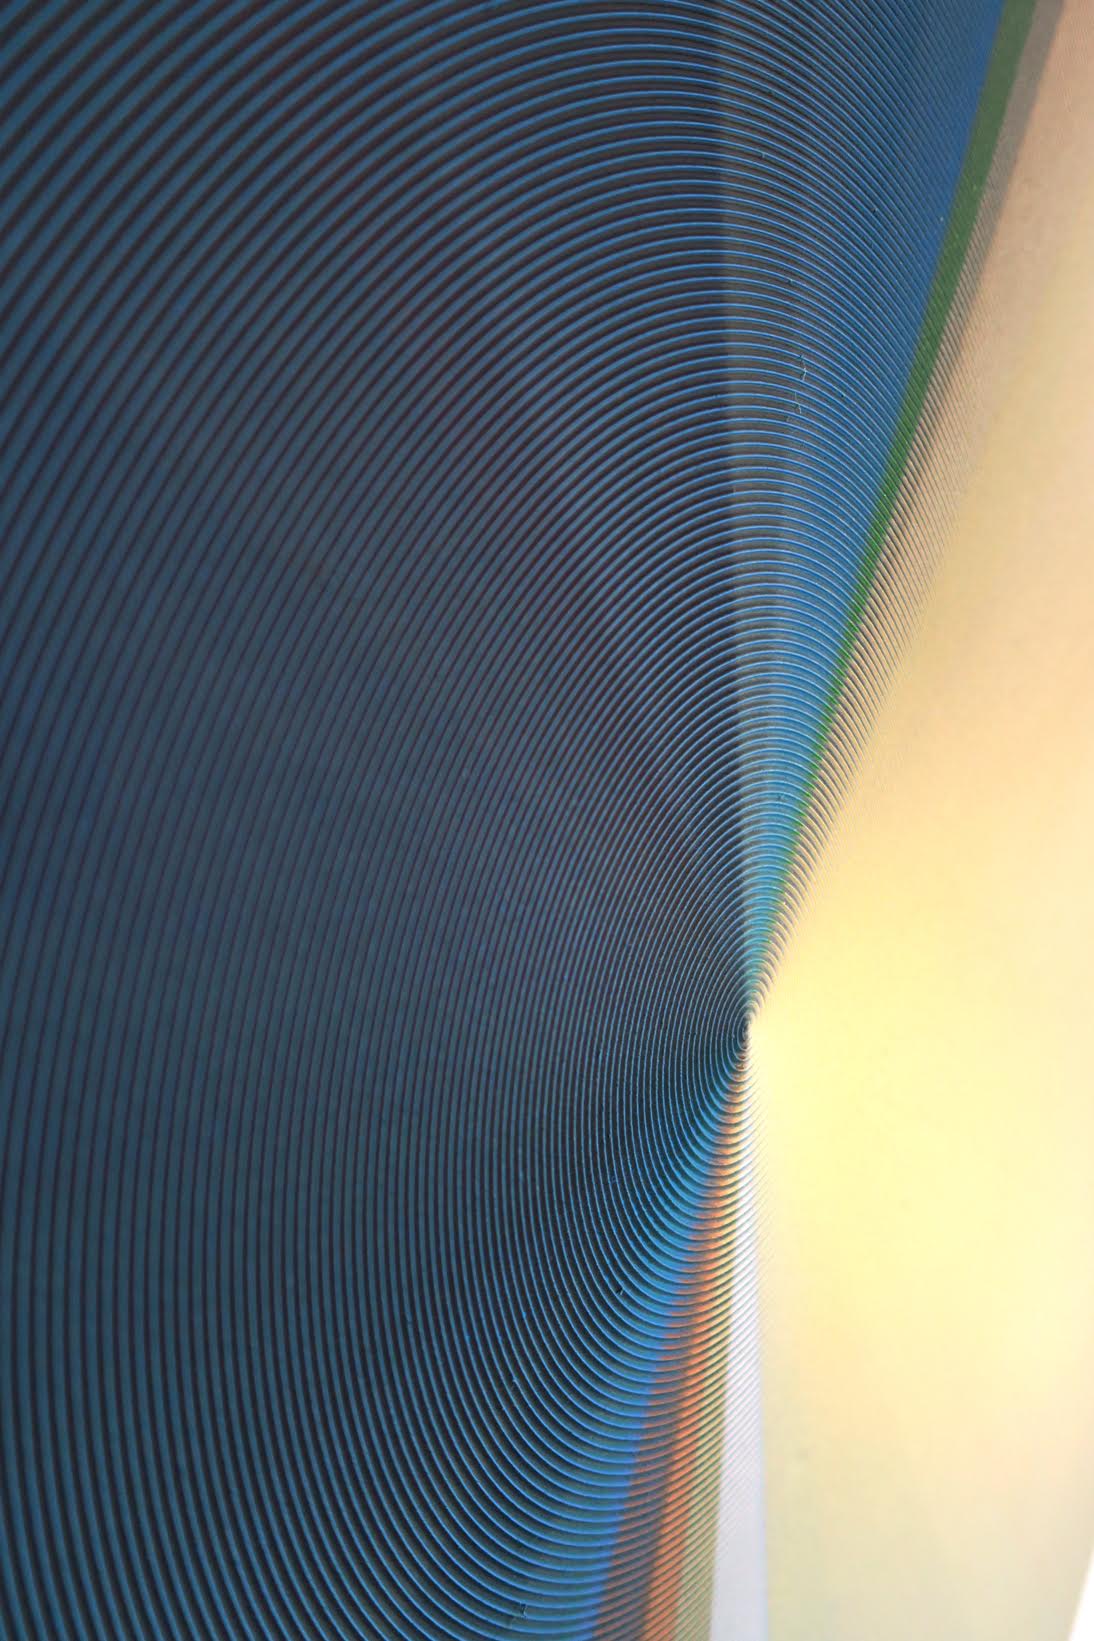 Adrien Couvrat, Vortex (détail), acrylique sur résine, diam 100 cm, 2015 Courtesy Galerie Maubert